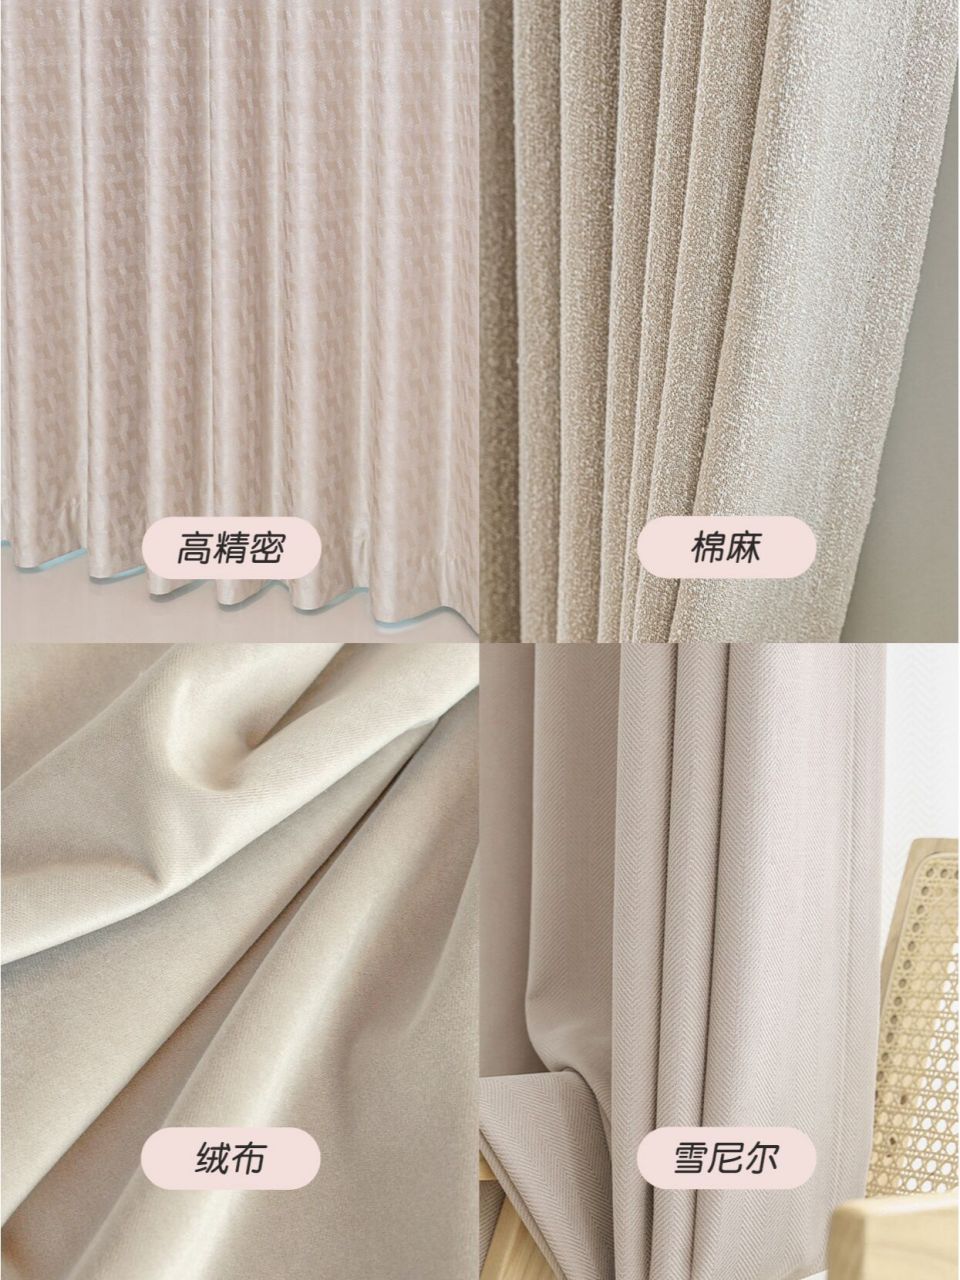 现在市面上常见的窗帘面料有高精密,绒布,雪尼尔和棉麻这4种